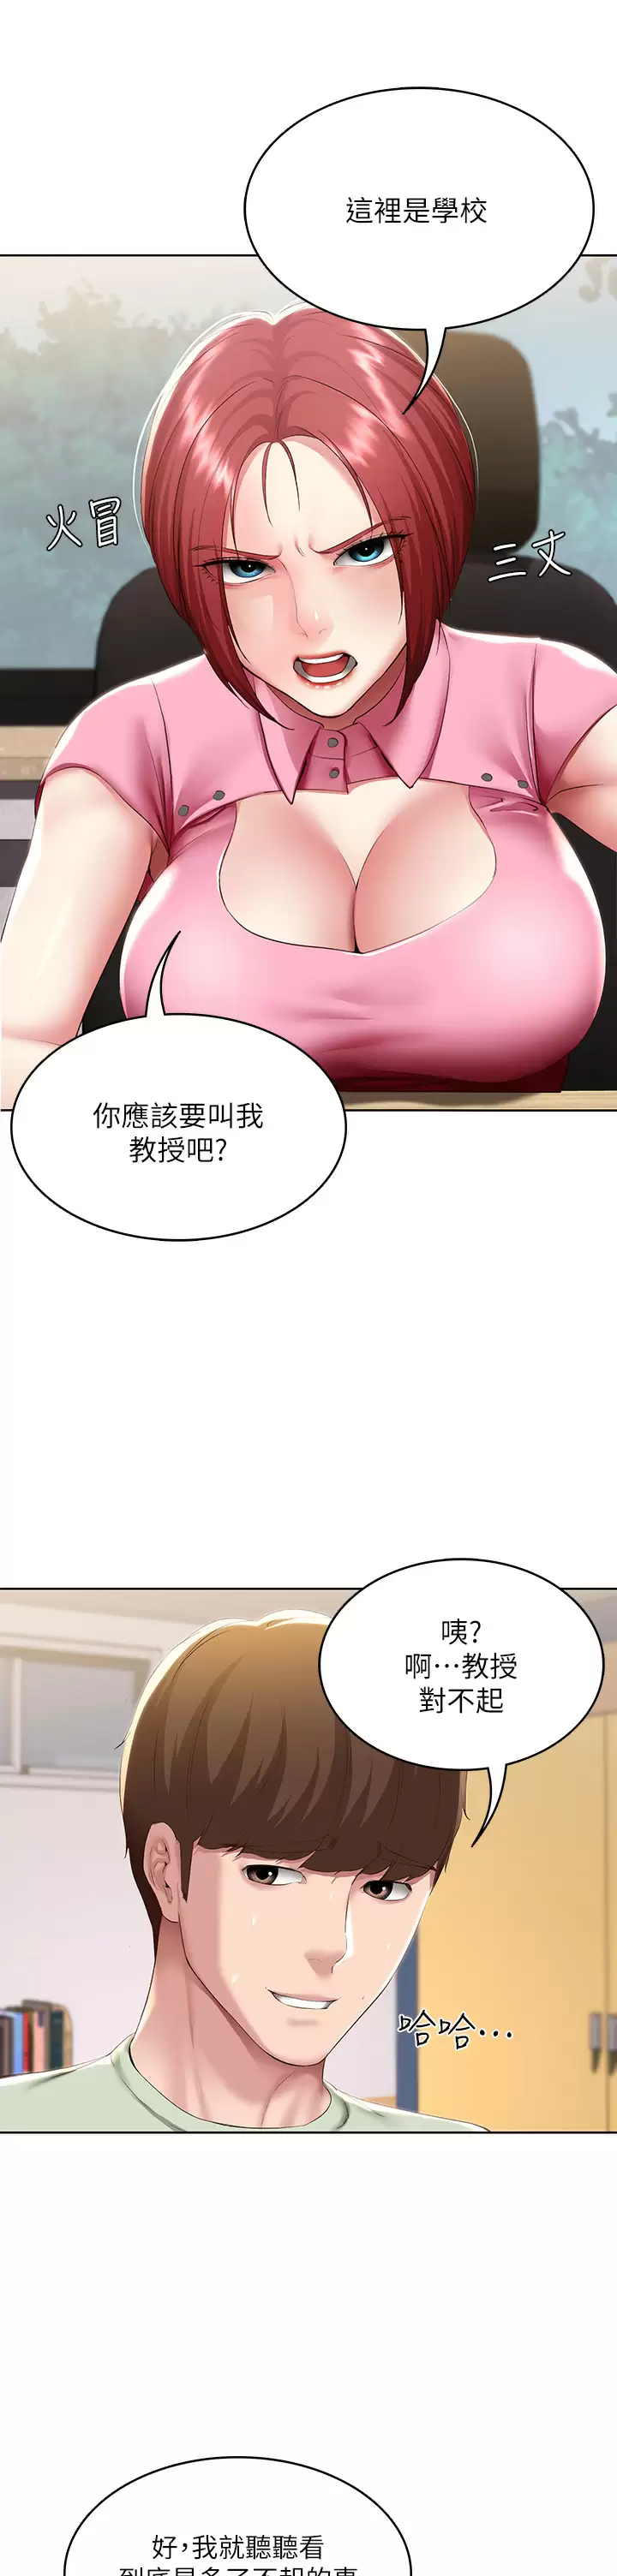 韩国污漫画 寄宿日記 第108话和性感女教授一对一补课 28